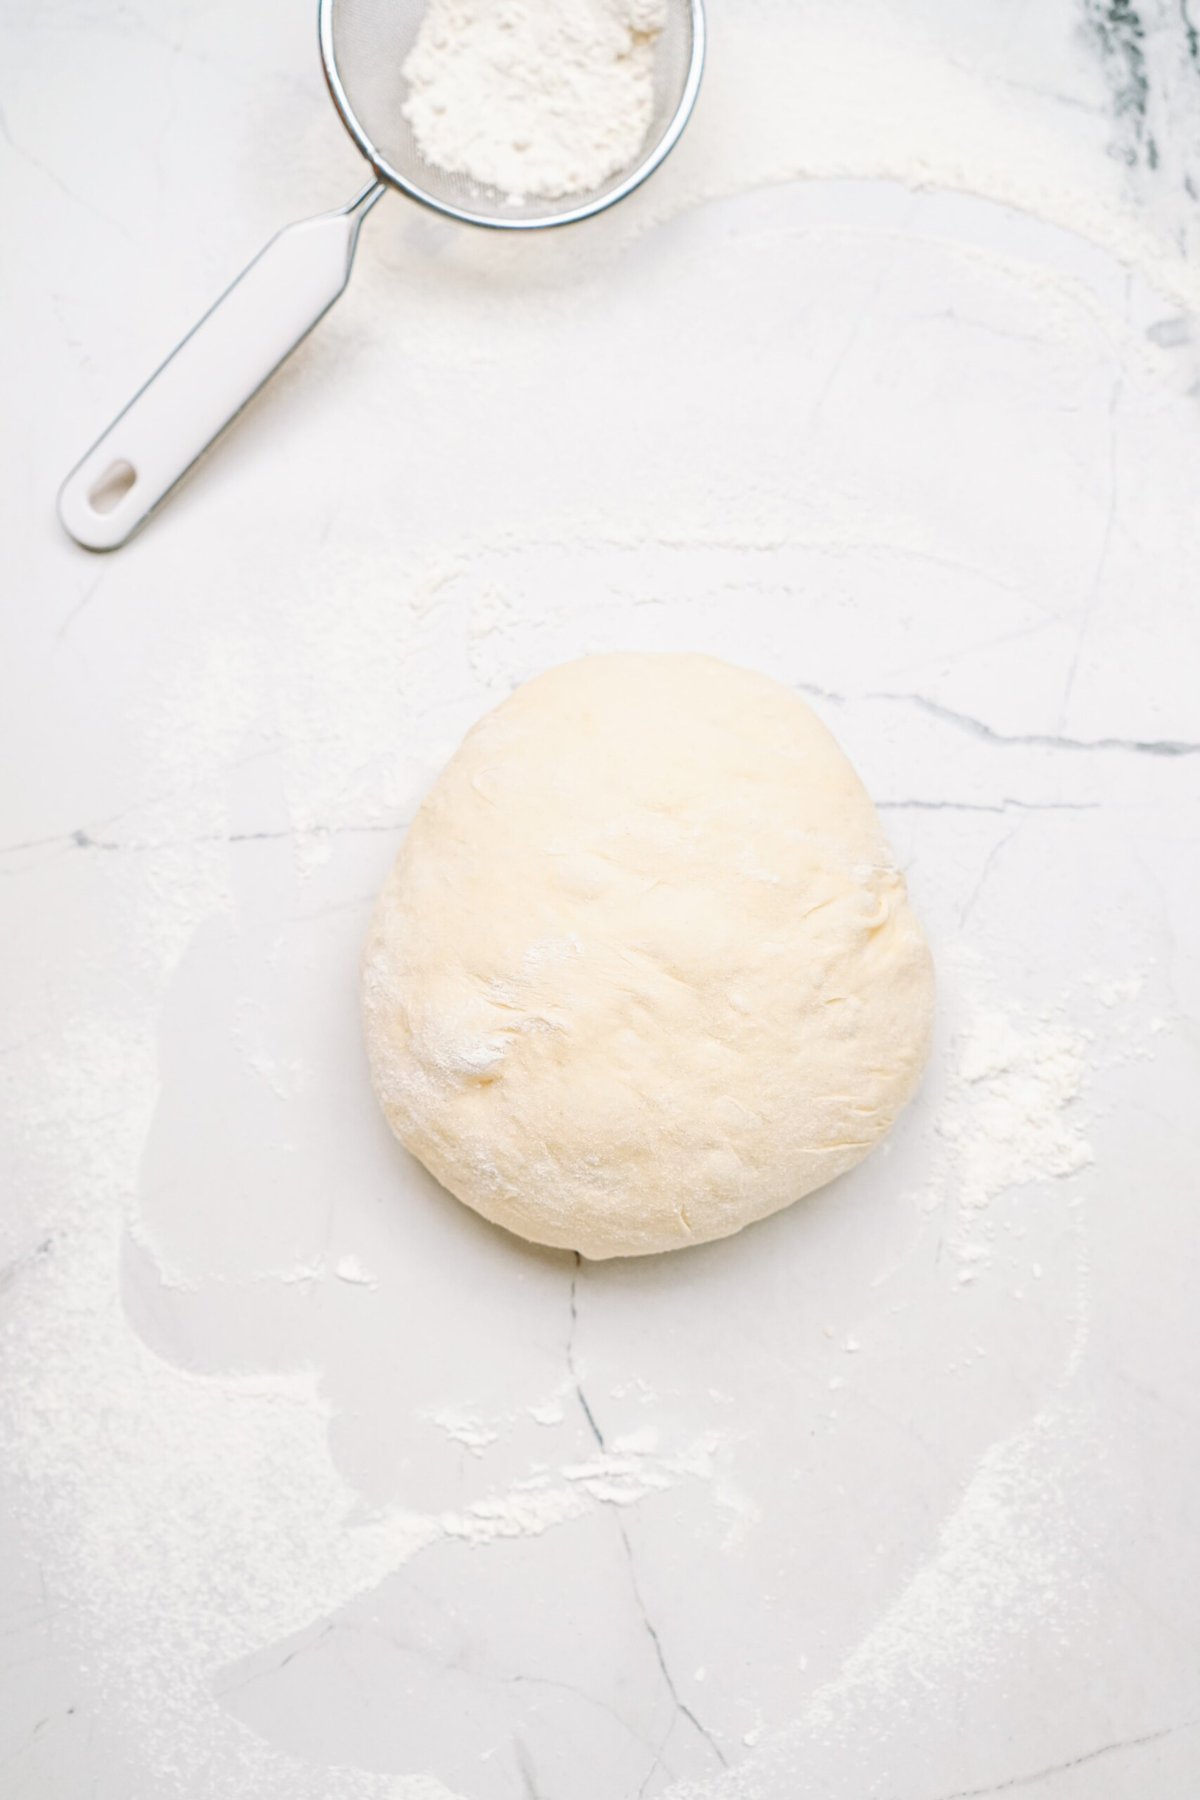 floured dough on a counter